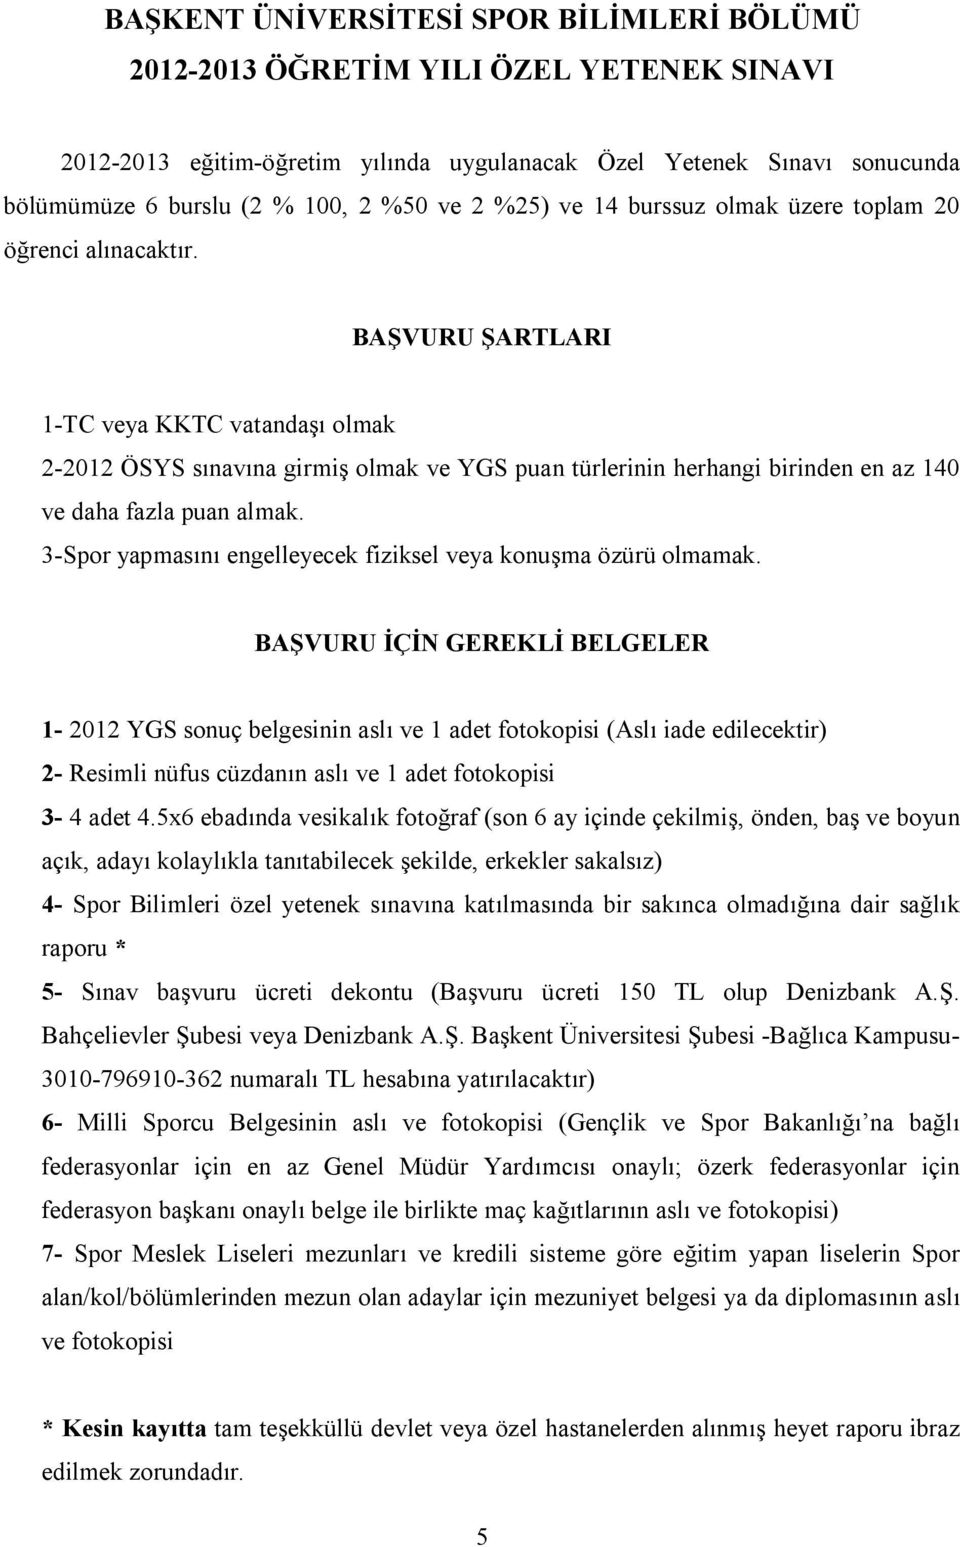 BAŞVURU ŞARTLARI 1-TC veya KKTC vatandaşı olmak 2-2012 ÖSYS sınavına girmiş olmak ve YGS puan türlerinin herhangi birinden en az 140 ve daha fazla puan almak.